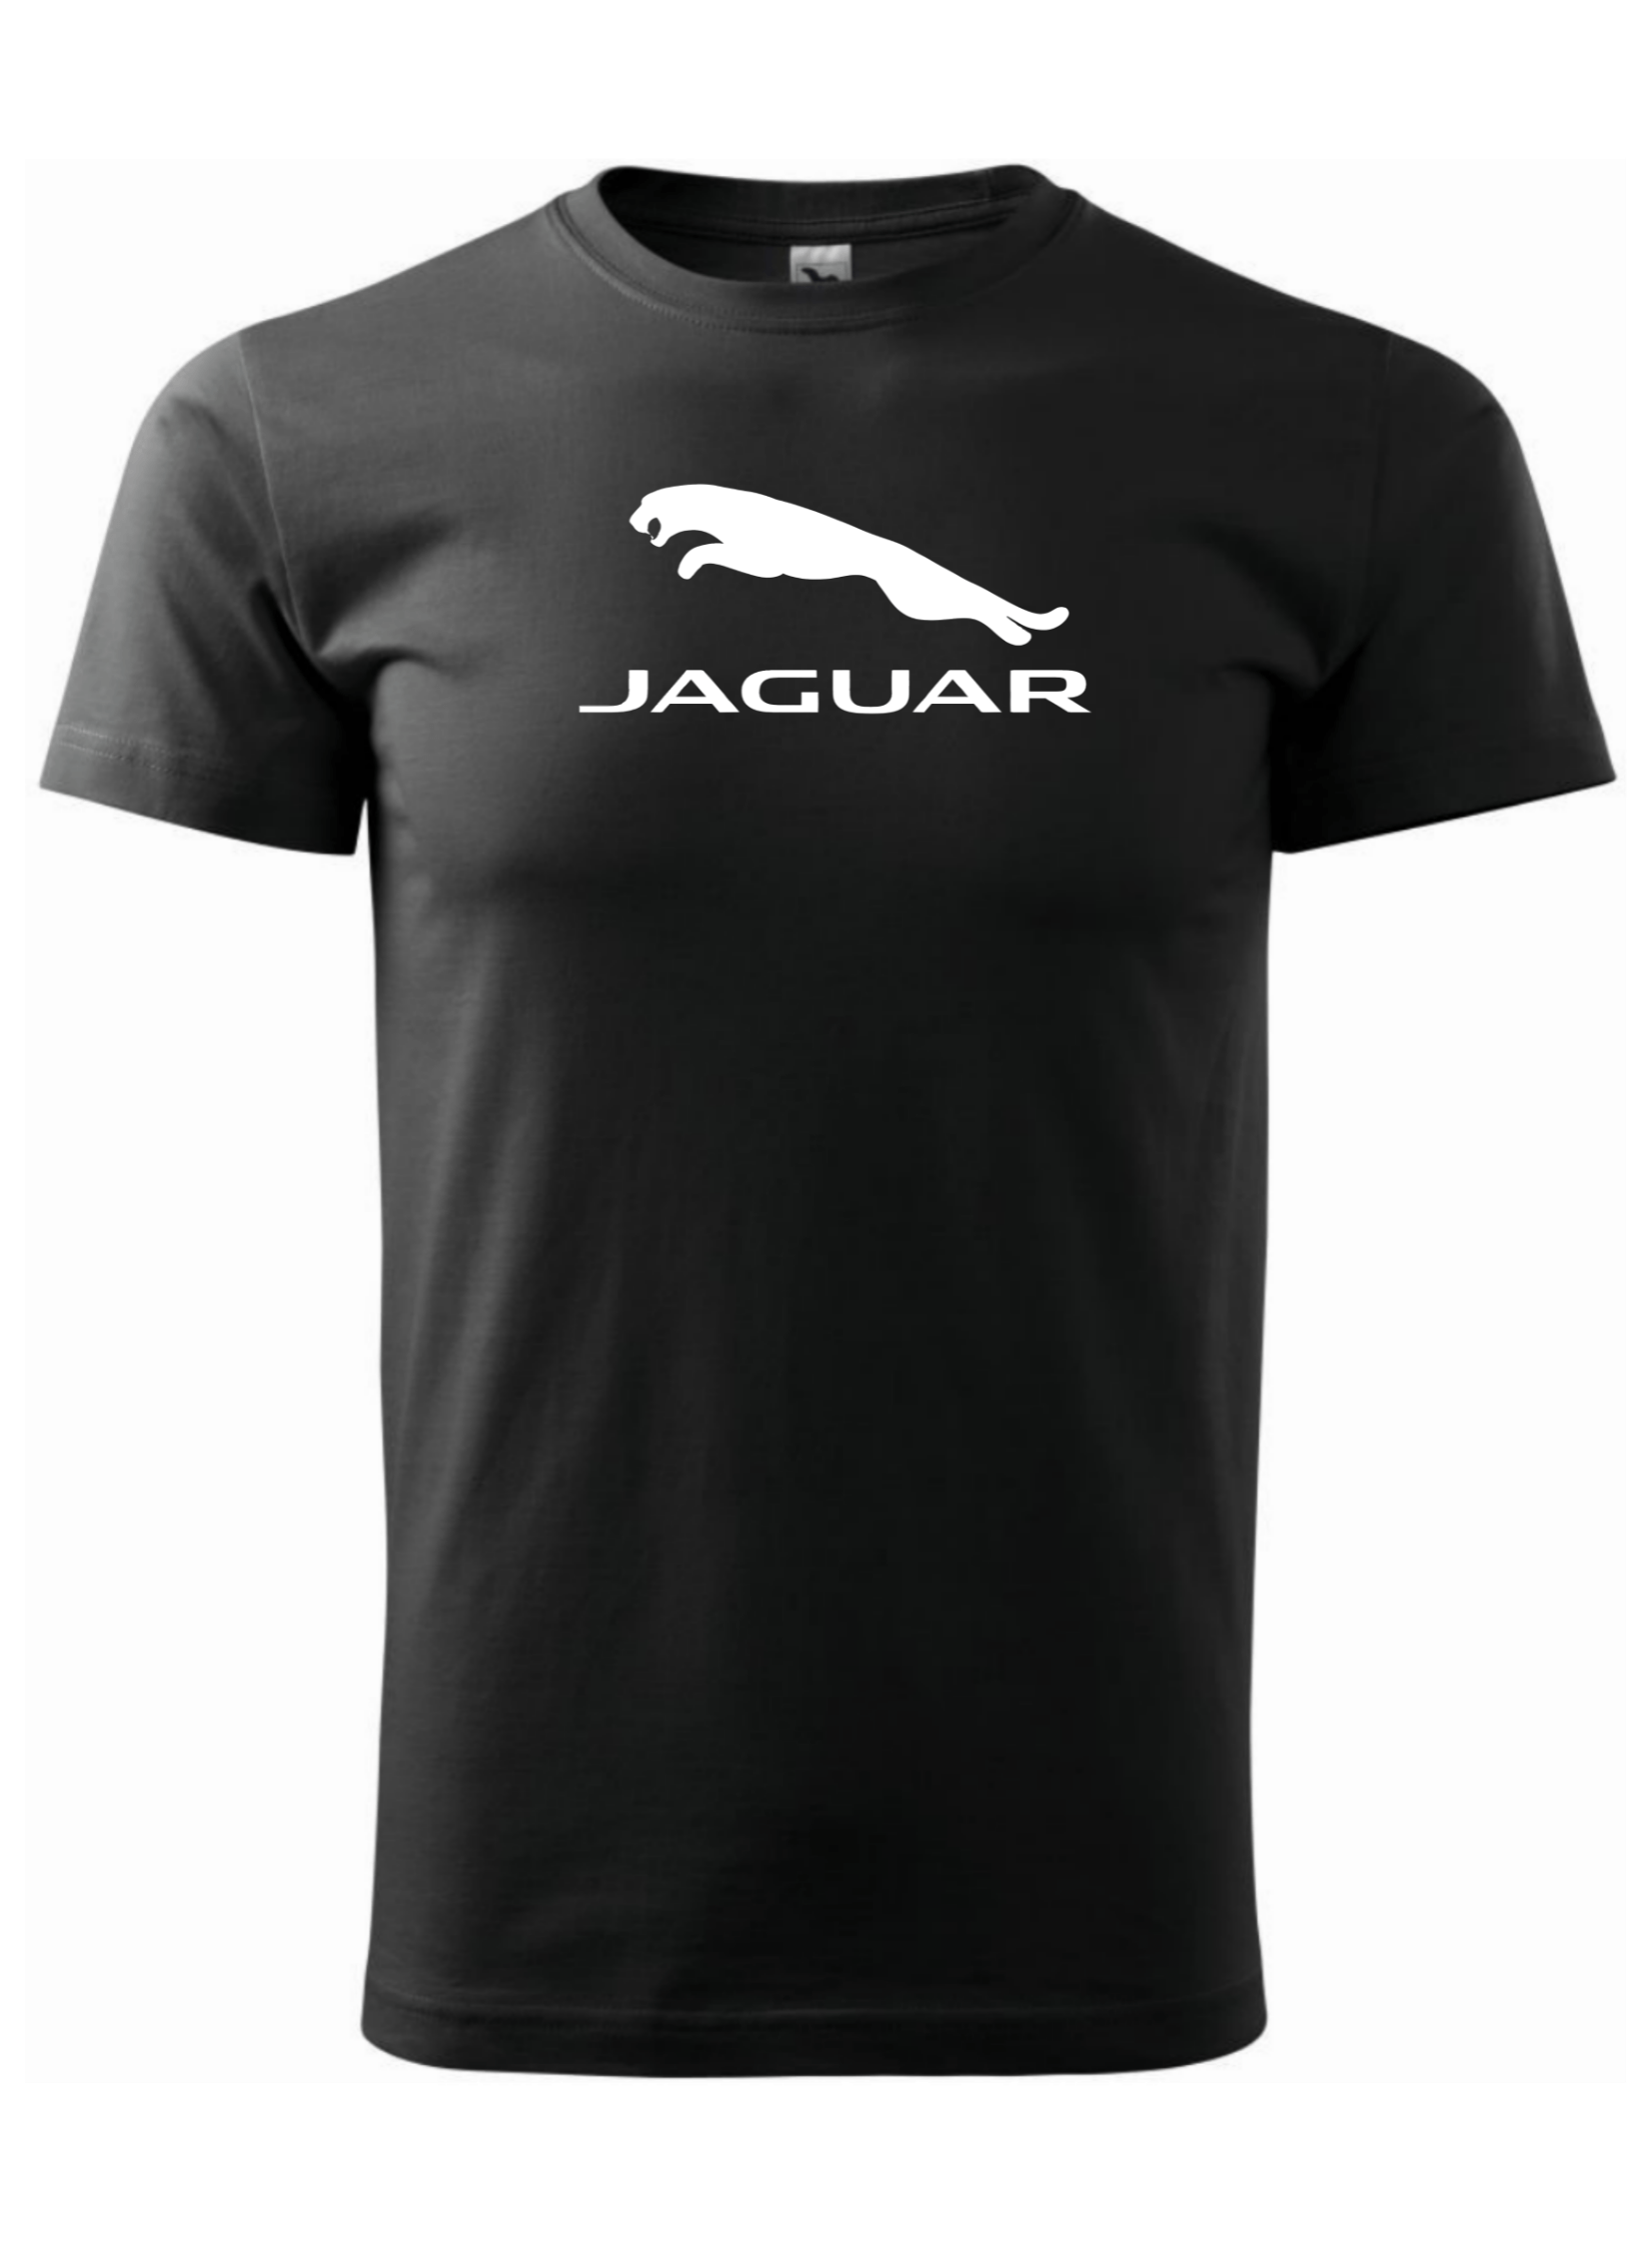 Pánské tričko s potiskem značky Jaguar